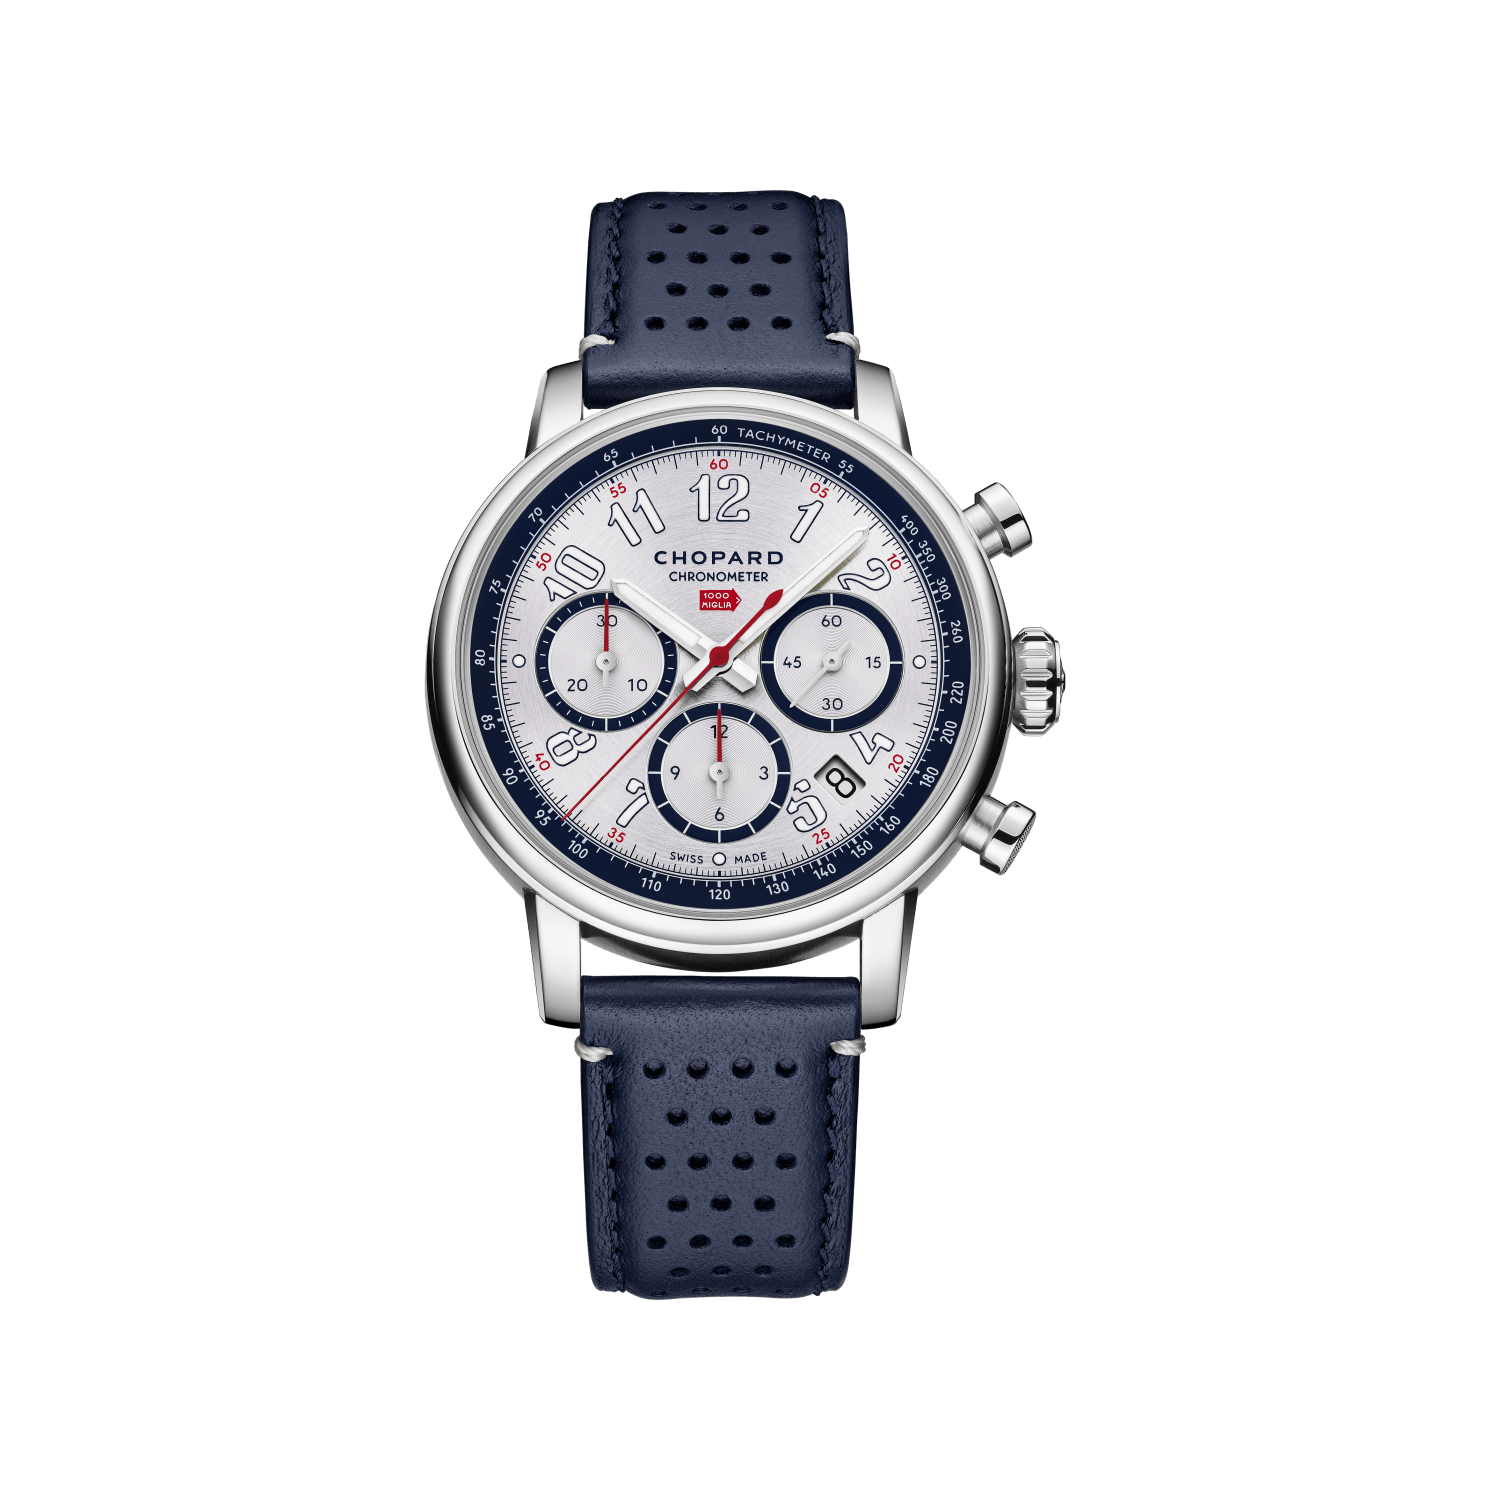 Luxus-Unisex Chronograph Uhr Mille Miglia Classic Chronograph 